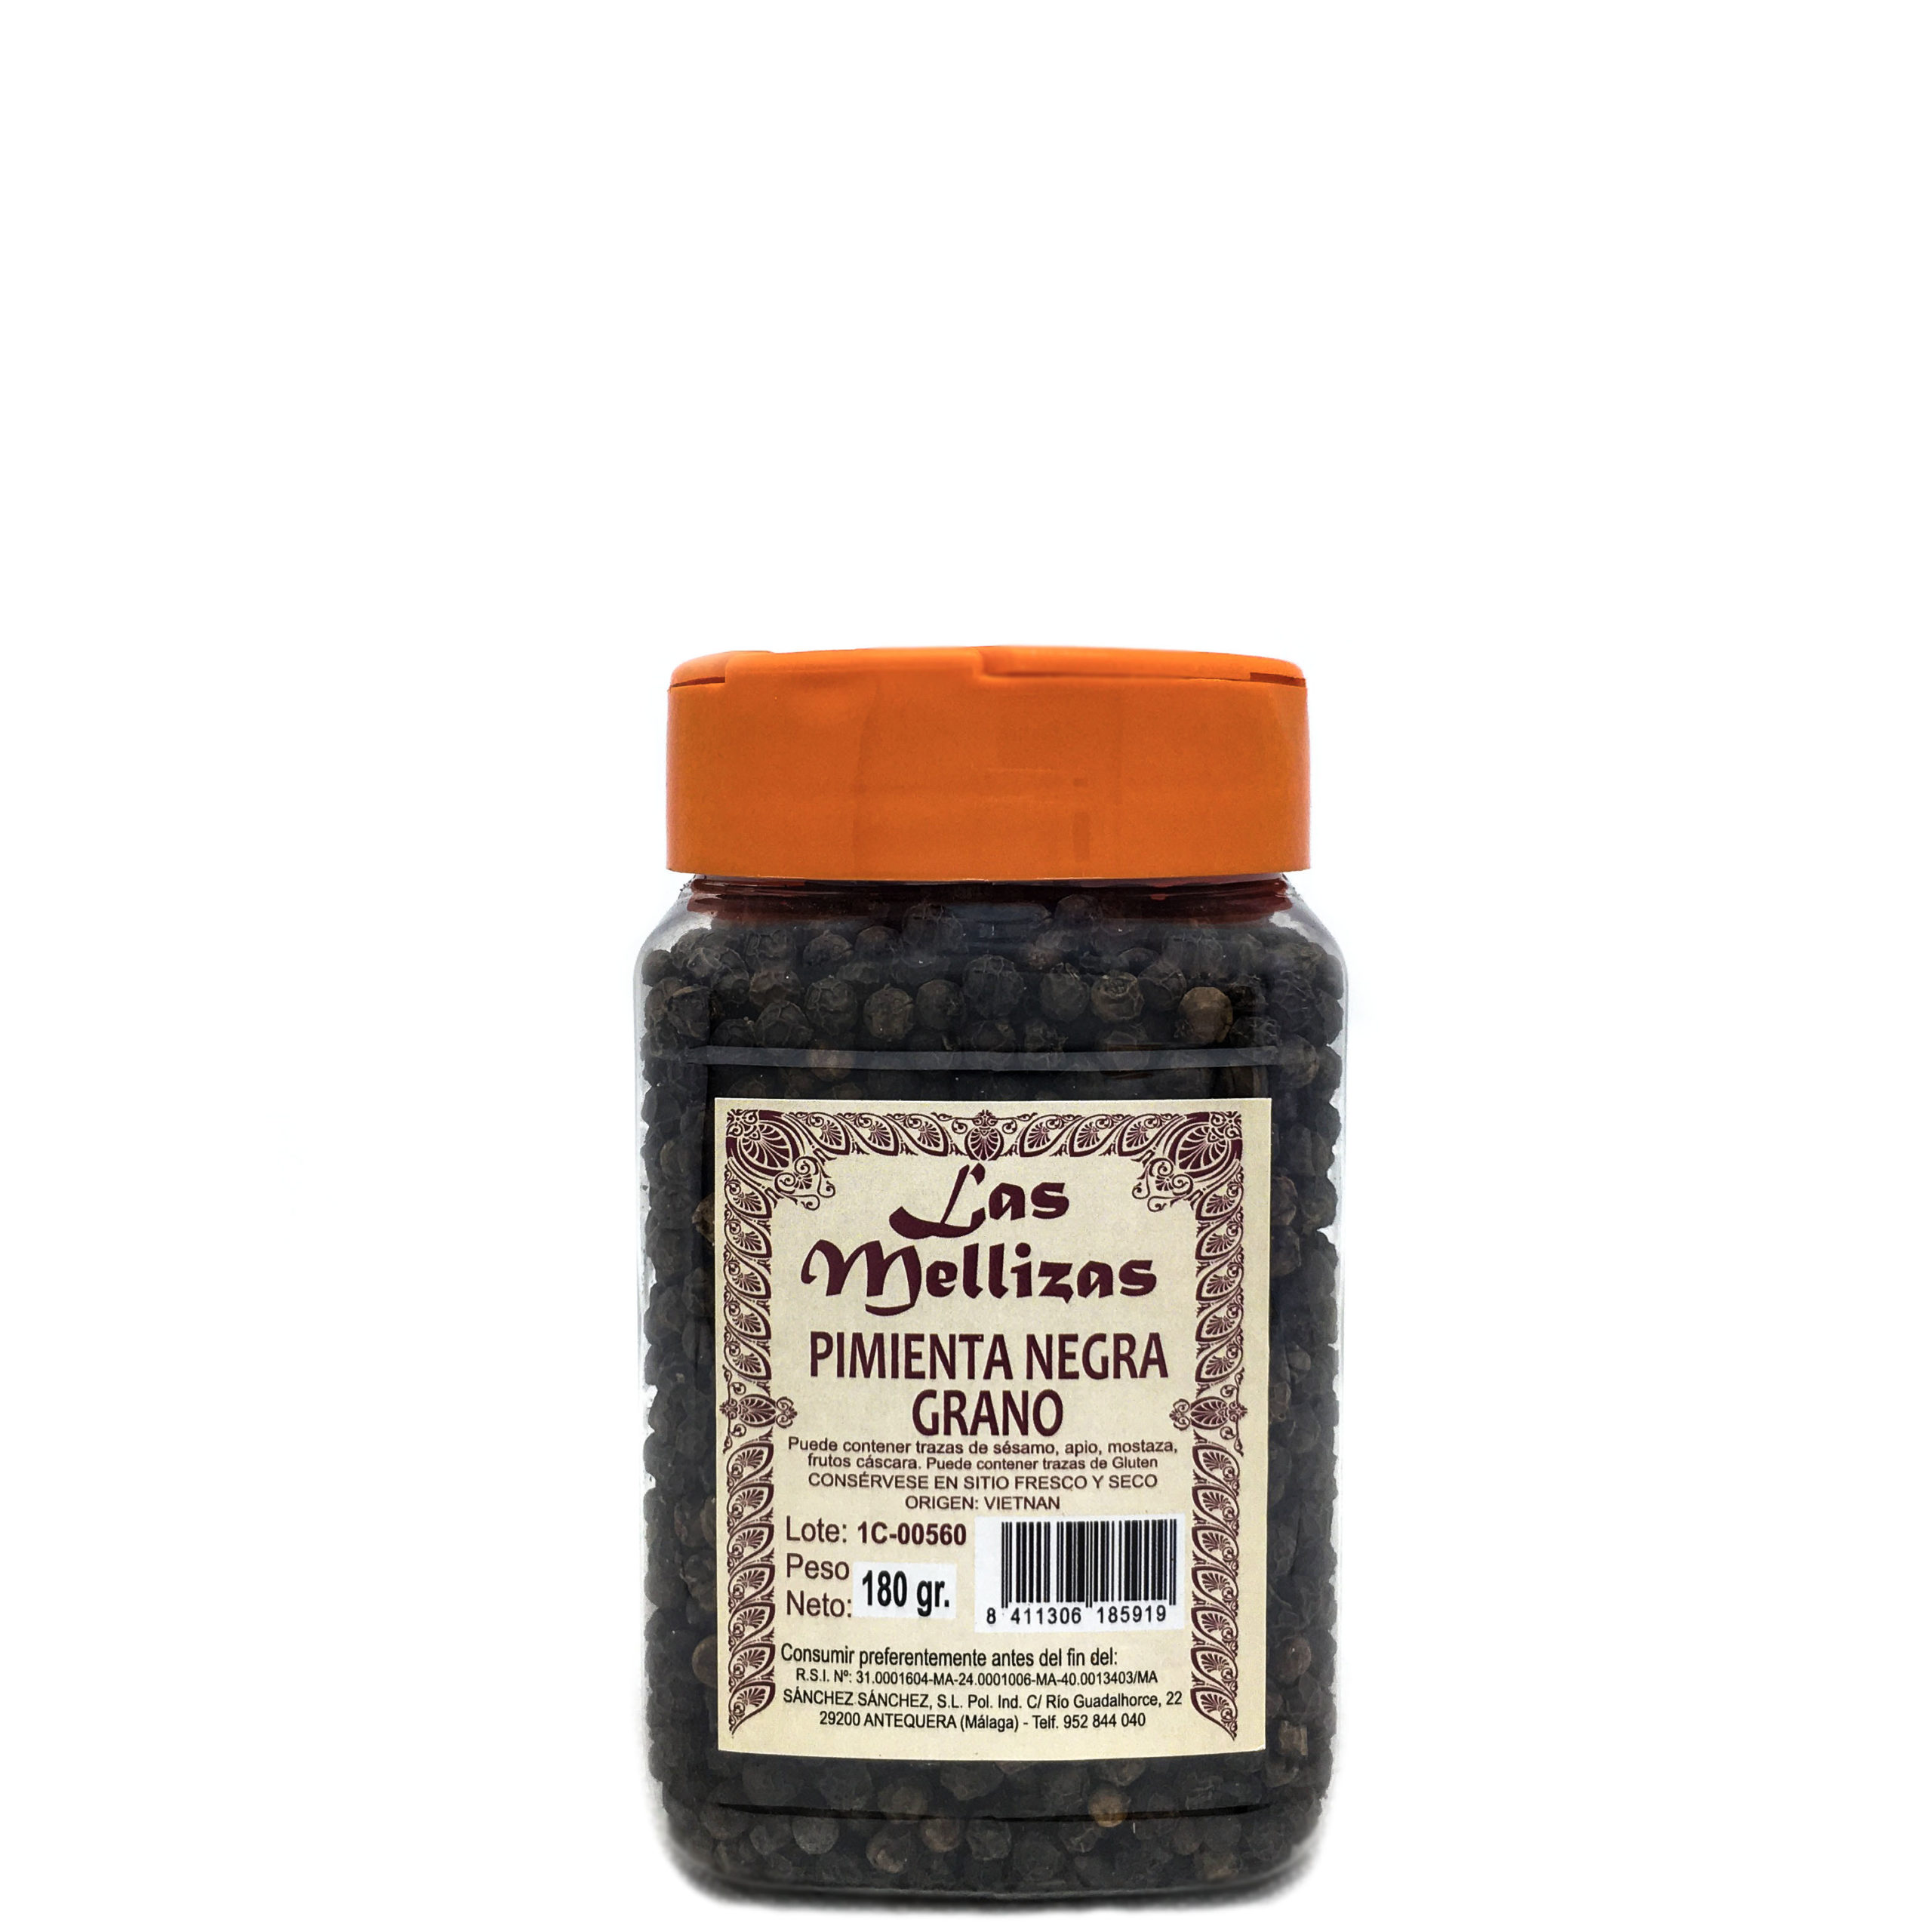 Pimienta Negra Grano Las Mellizas – Especias y Condimentos Online